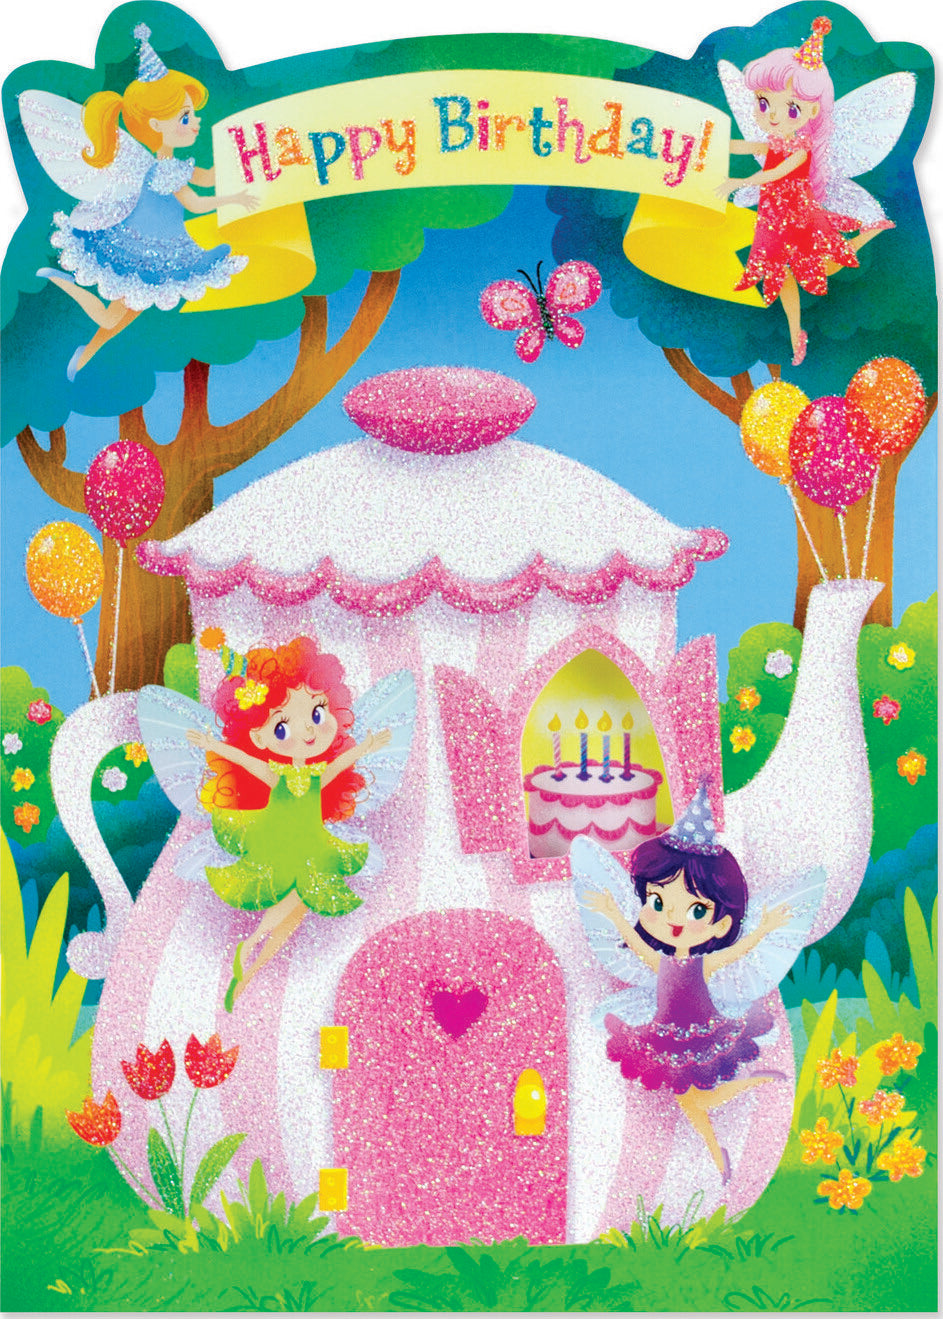 Fairy Tea Party Glitter Birthday Card by Peaceable Kingdom